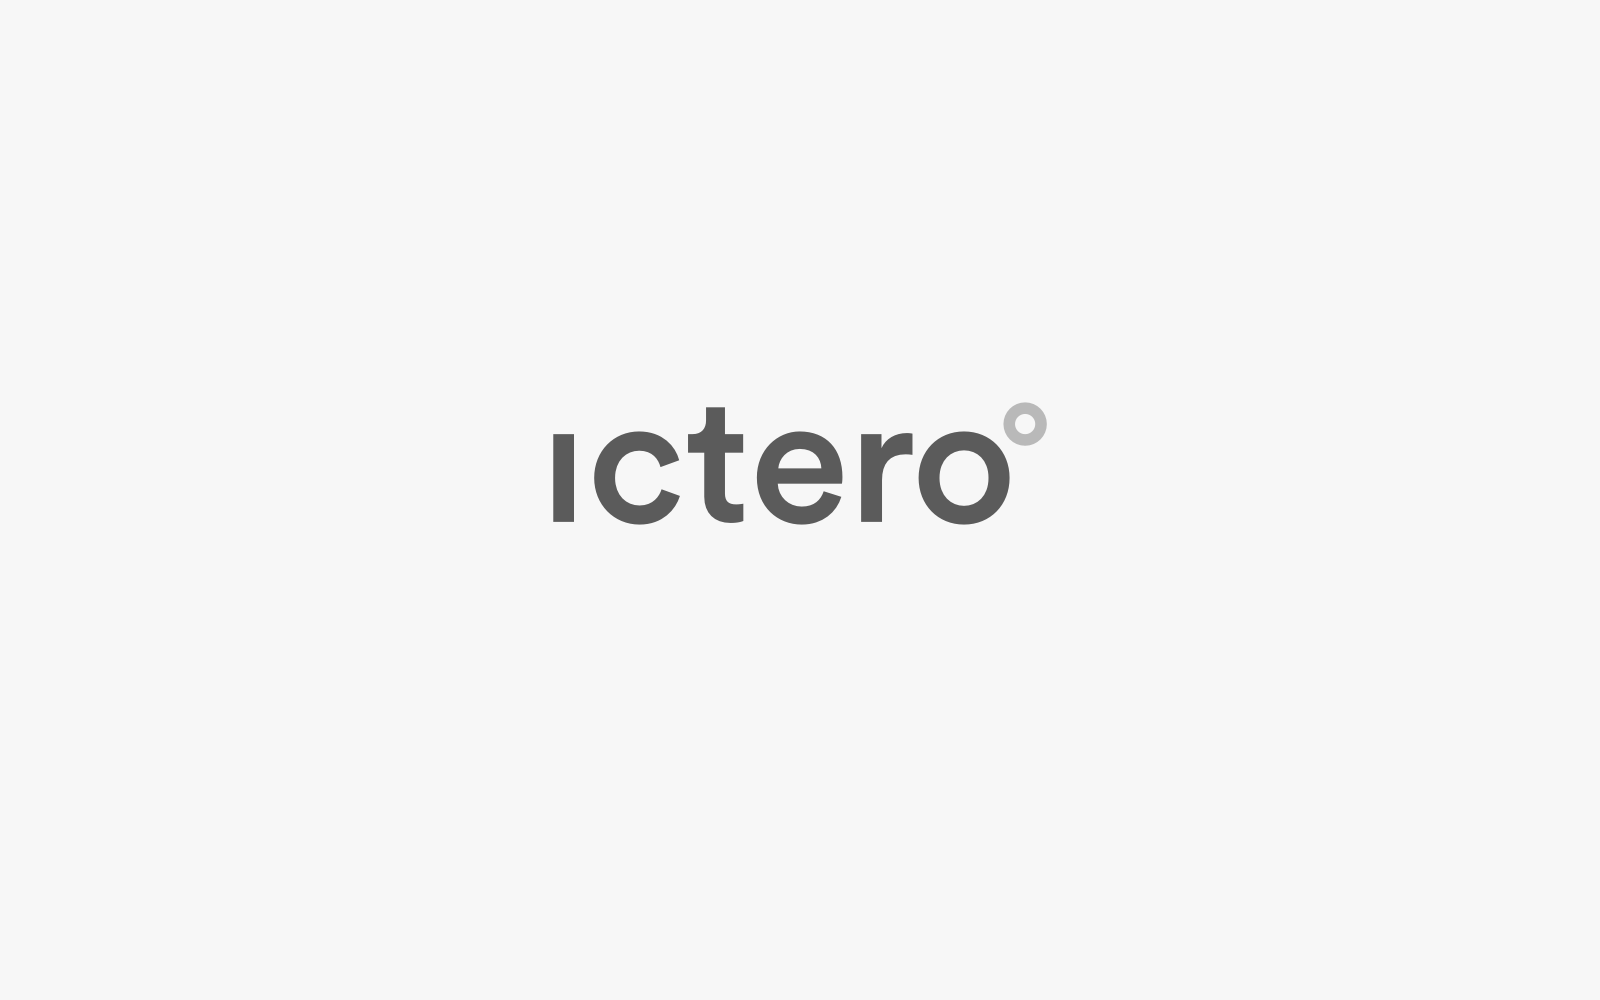 Ictero Logotype Portfolio